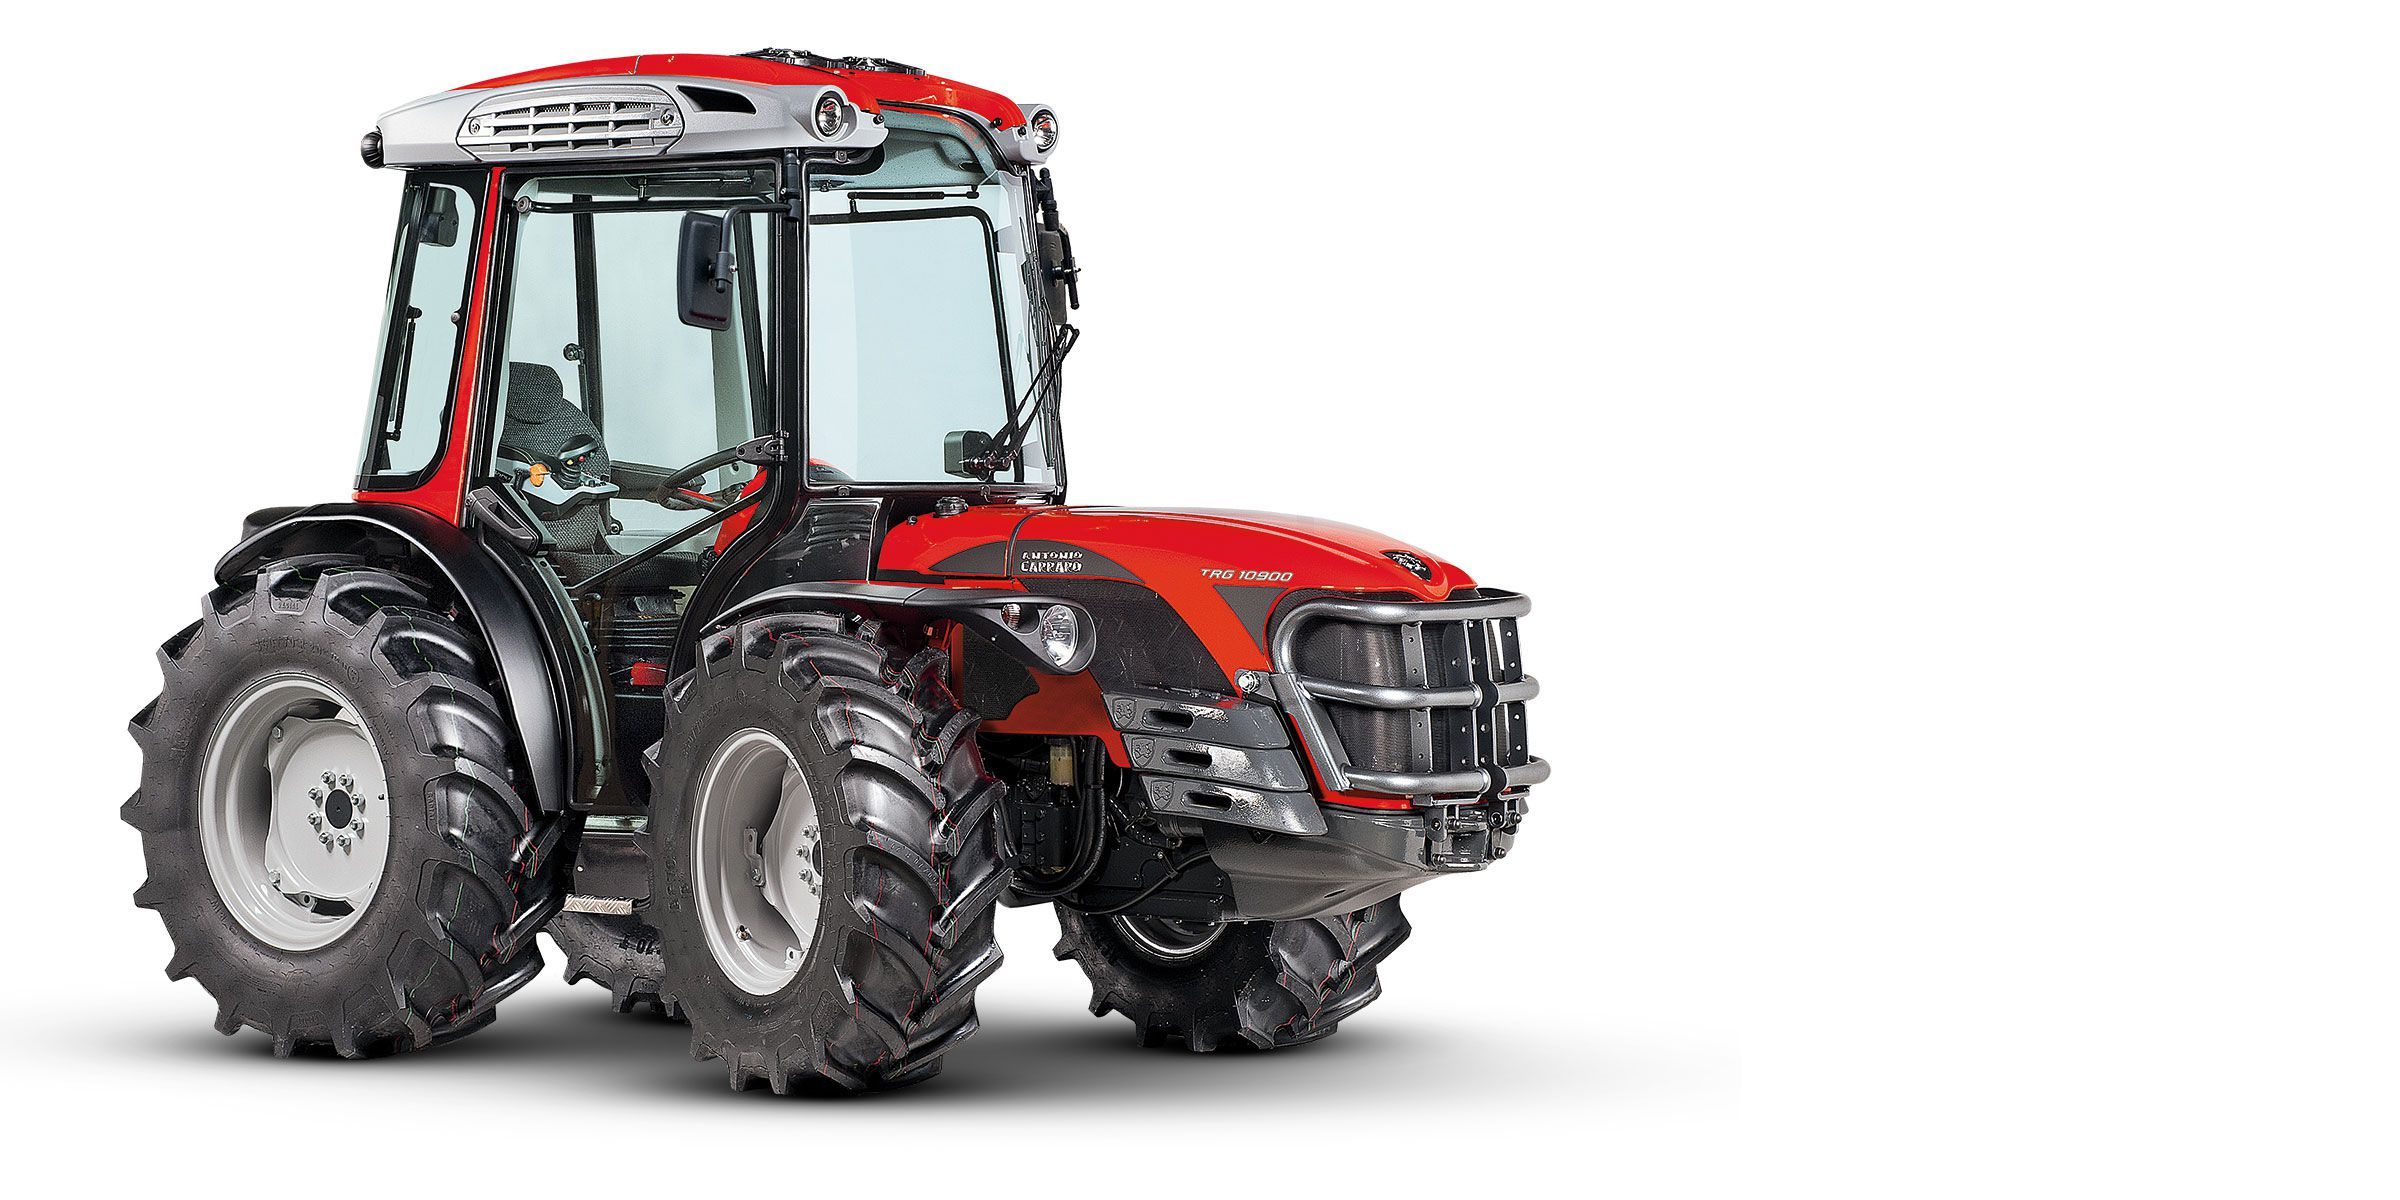 Trg 10900 - tracteur agricole - antonio carraro - capacité 2400 kg_0